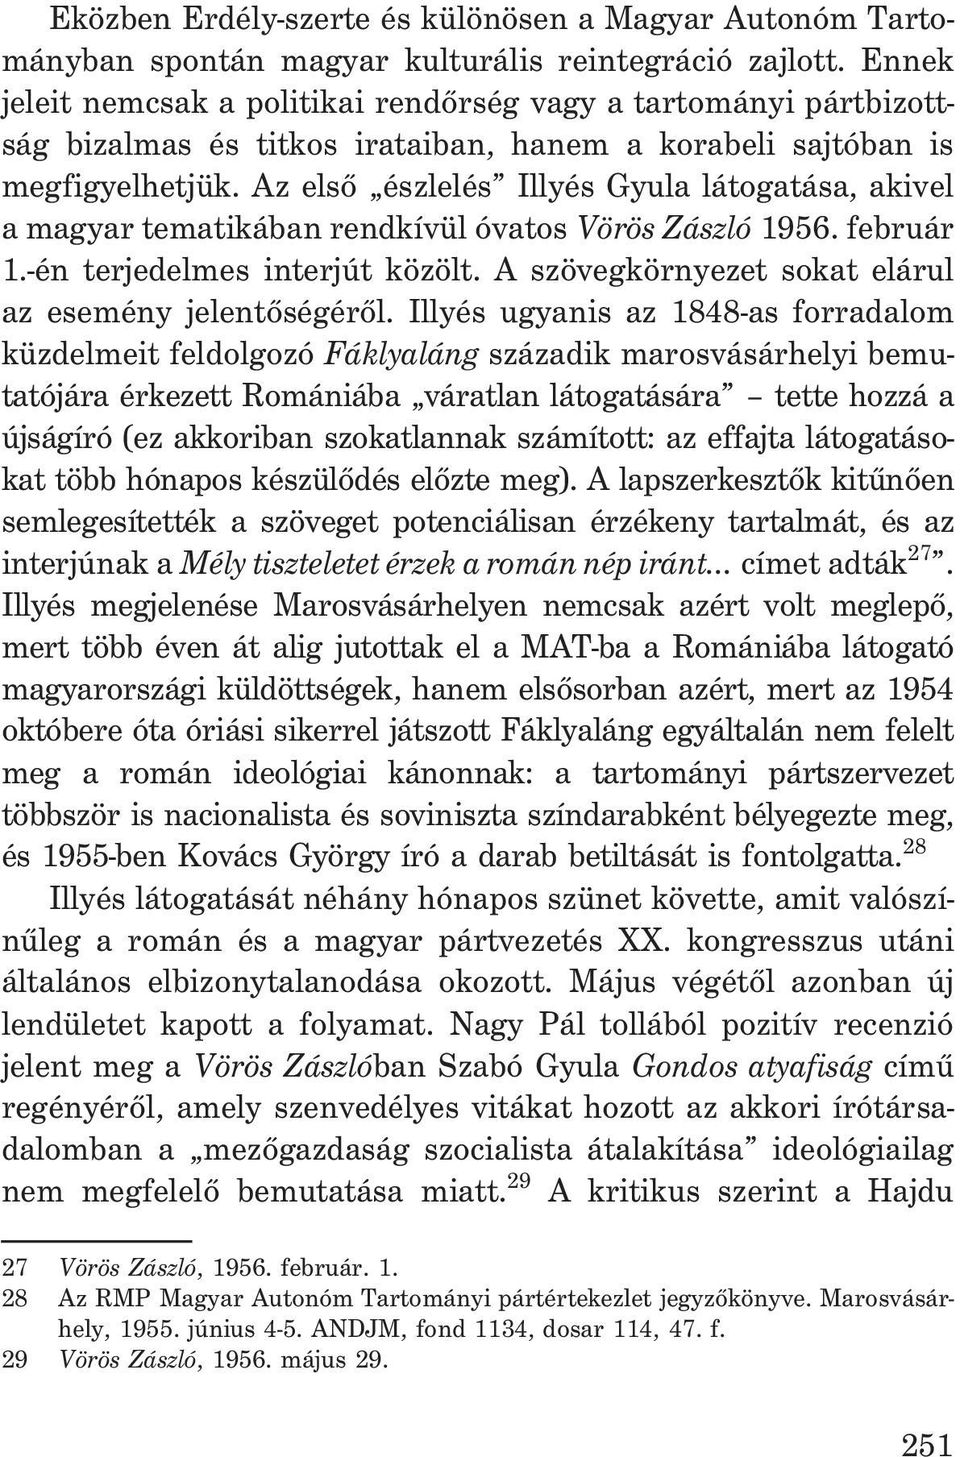 Az elsõ észlelés Illyés Gyula látogatása, akivel a magyar tematikában rendkívül óvatos Vörös Zászló 1956. február 1.-én terjedelmes interjút közölt.